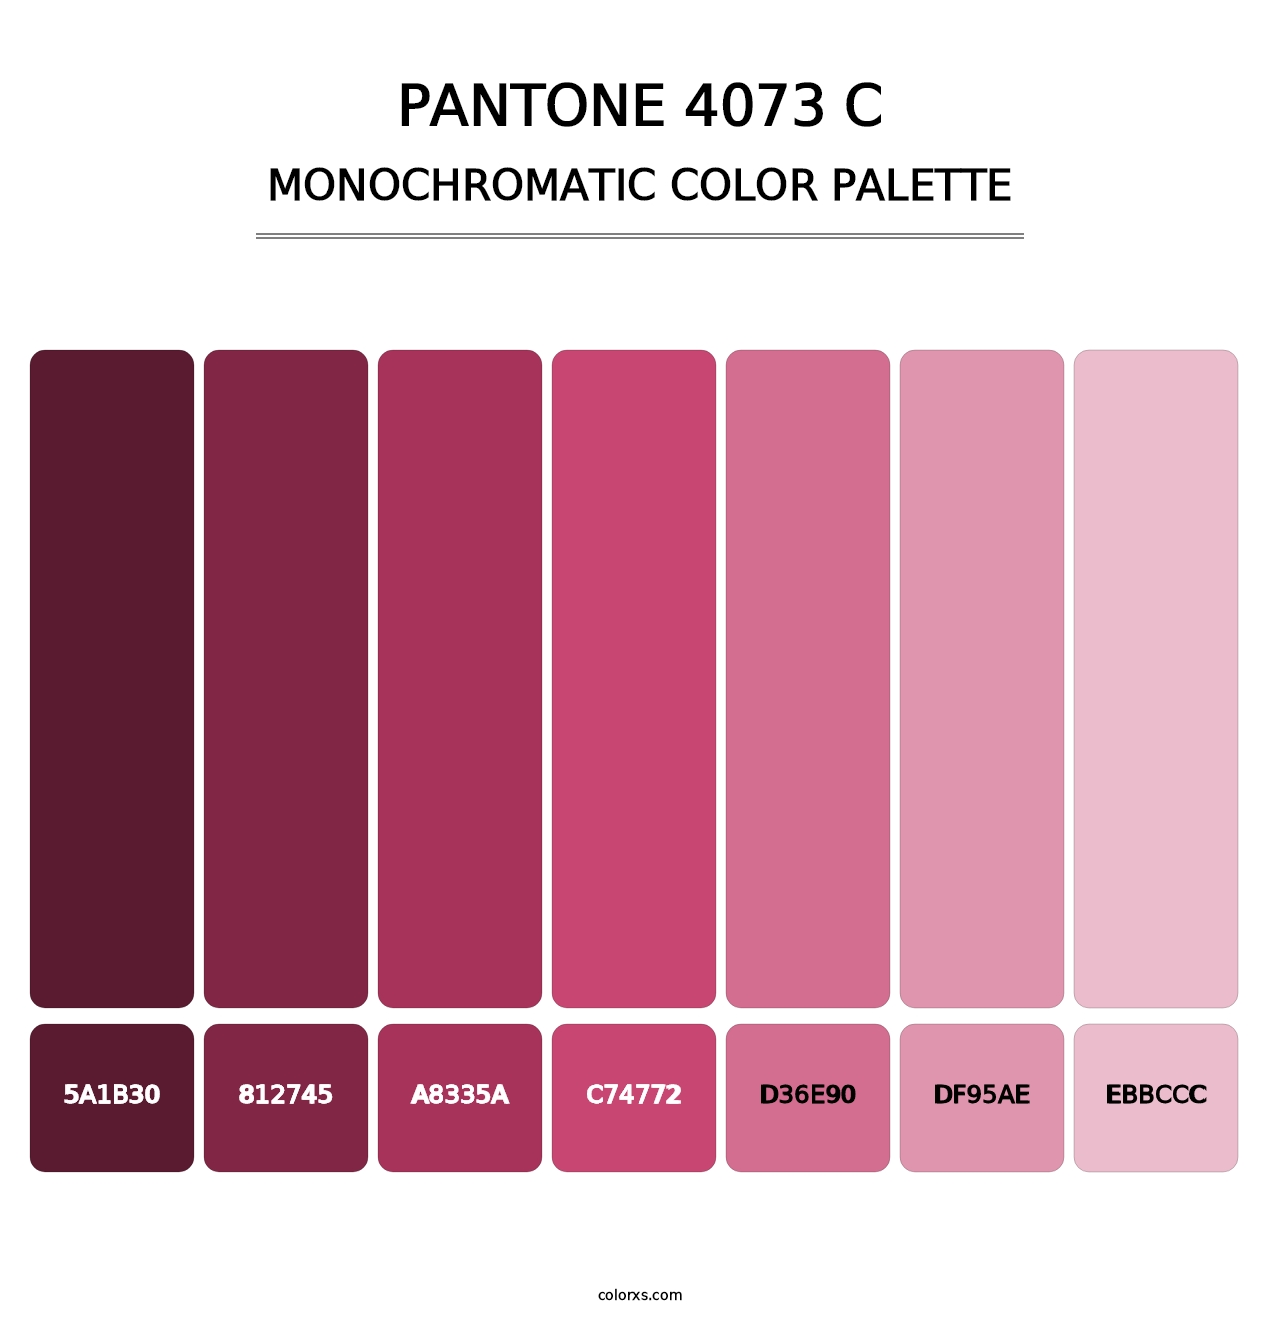 PANTONE 4073 C - Monochromatic Color Palette